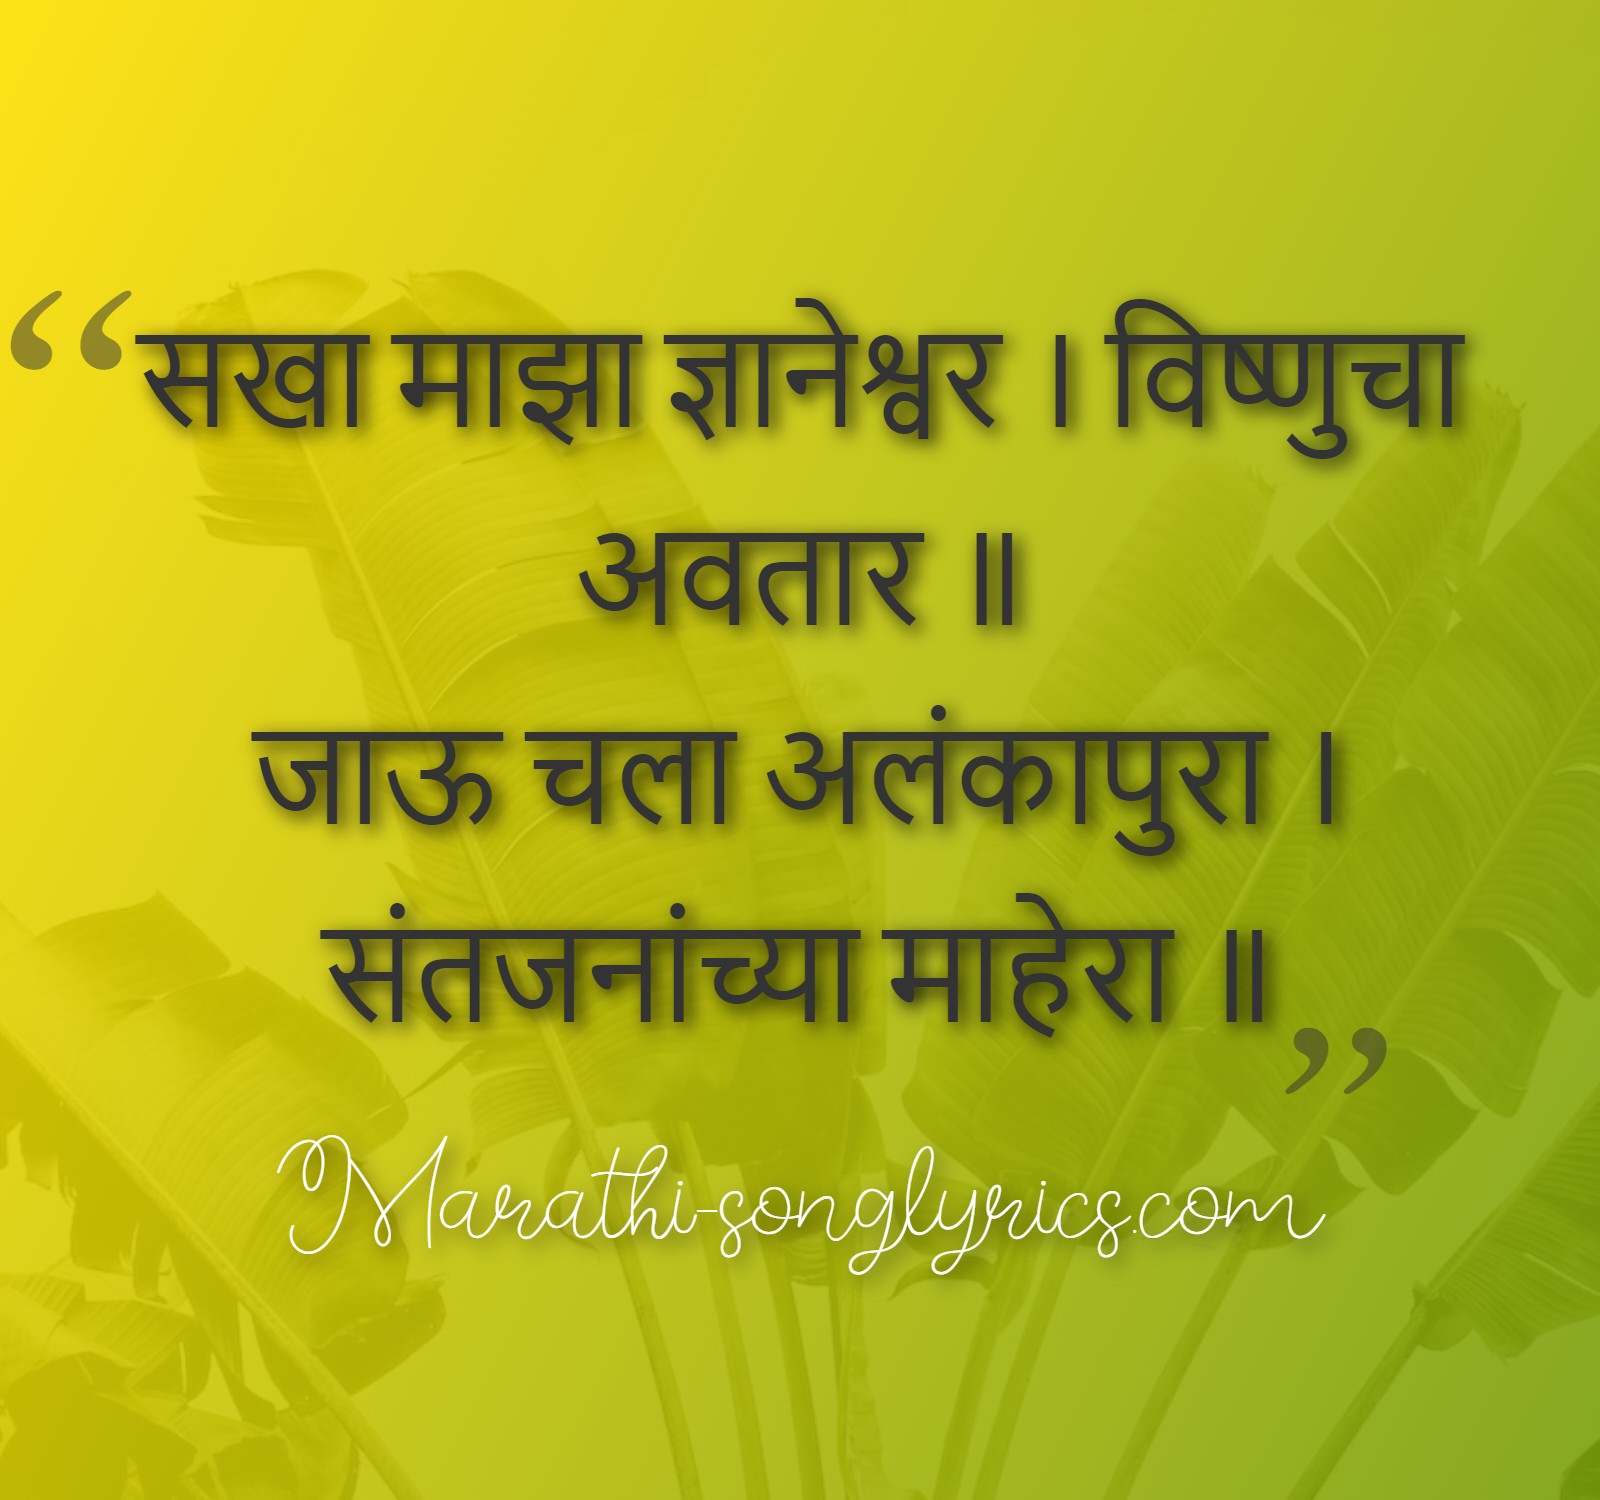 सखा माझा ज्ञानेश्वर | Sakha Maza Dnyaneshwar Lyrics in Marathi